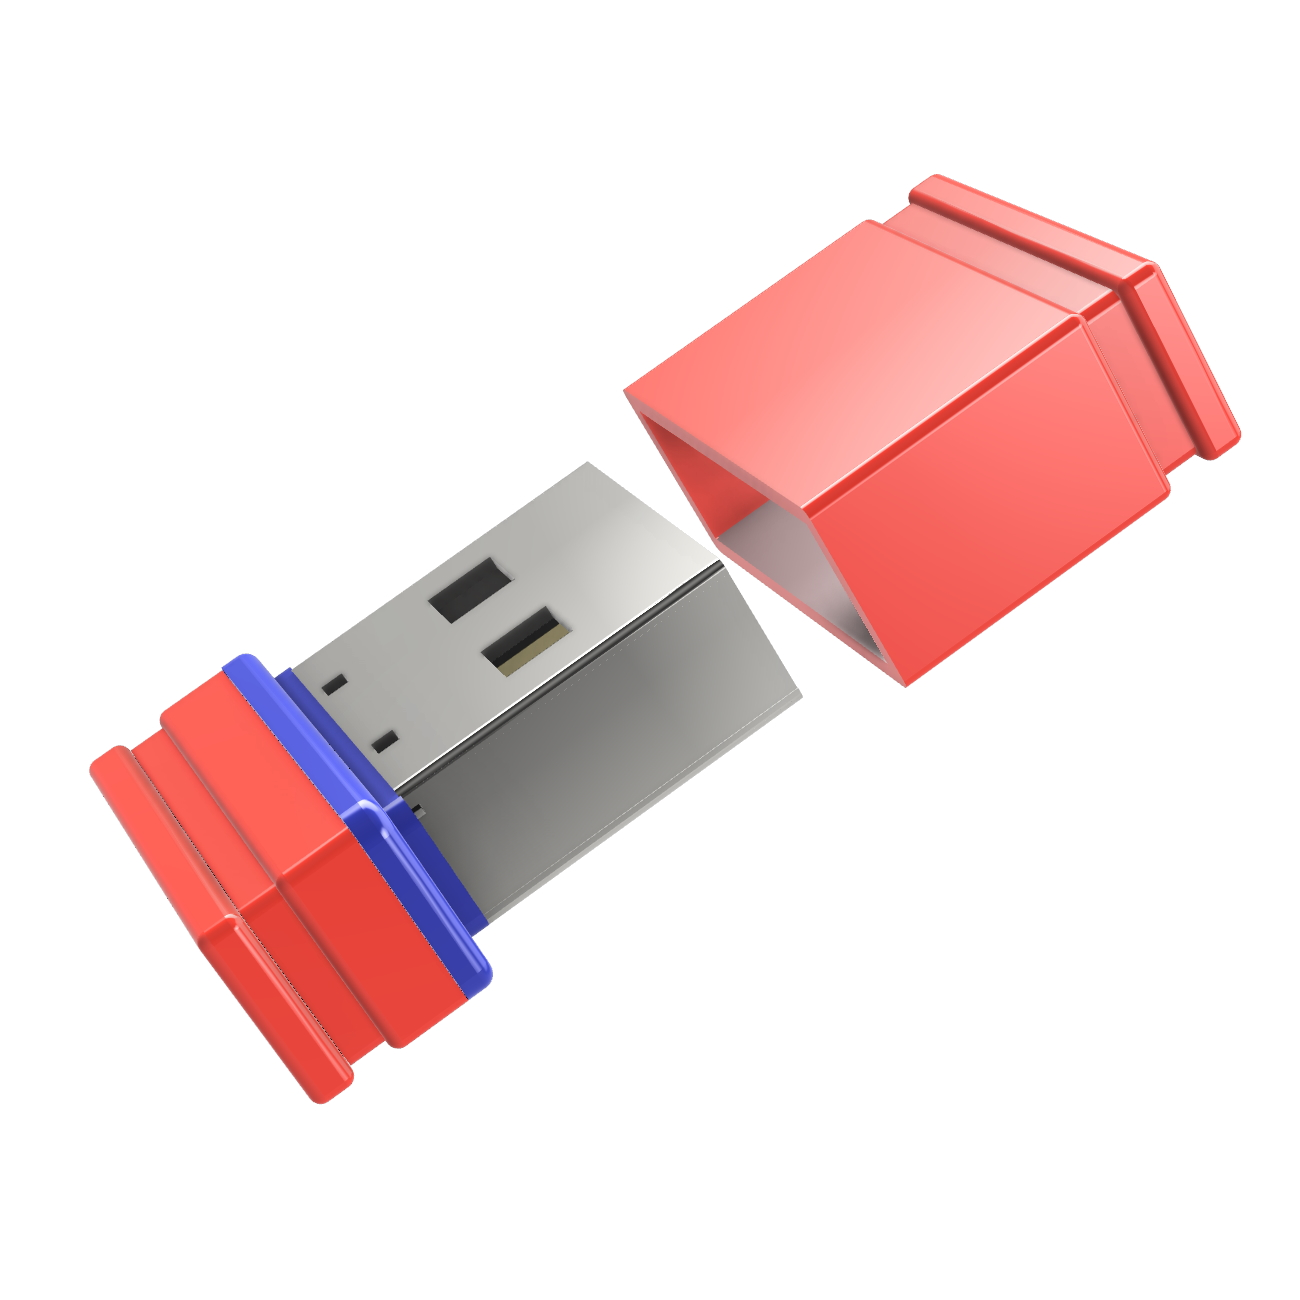 USB GERMANY (Rot/Blau, USB-Stick GB) ®ULTRA 1 Mini P1